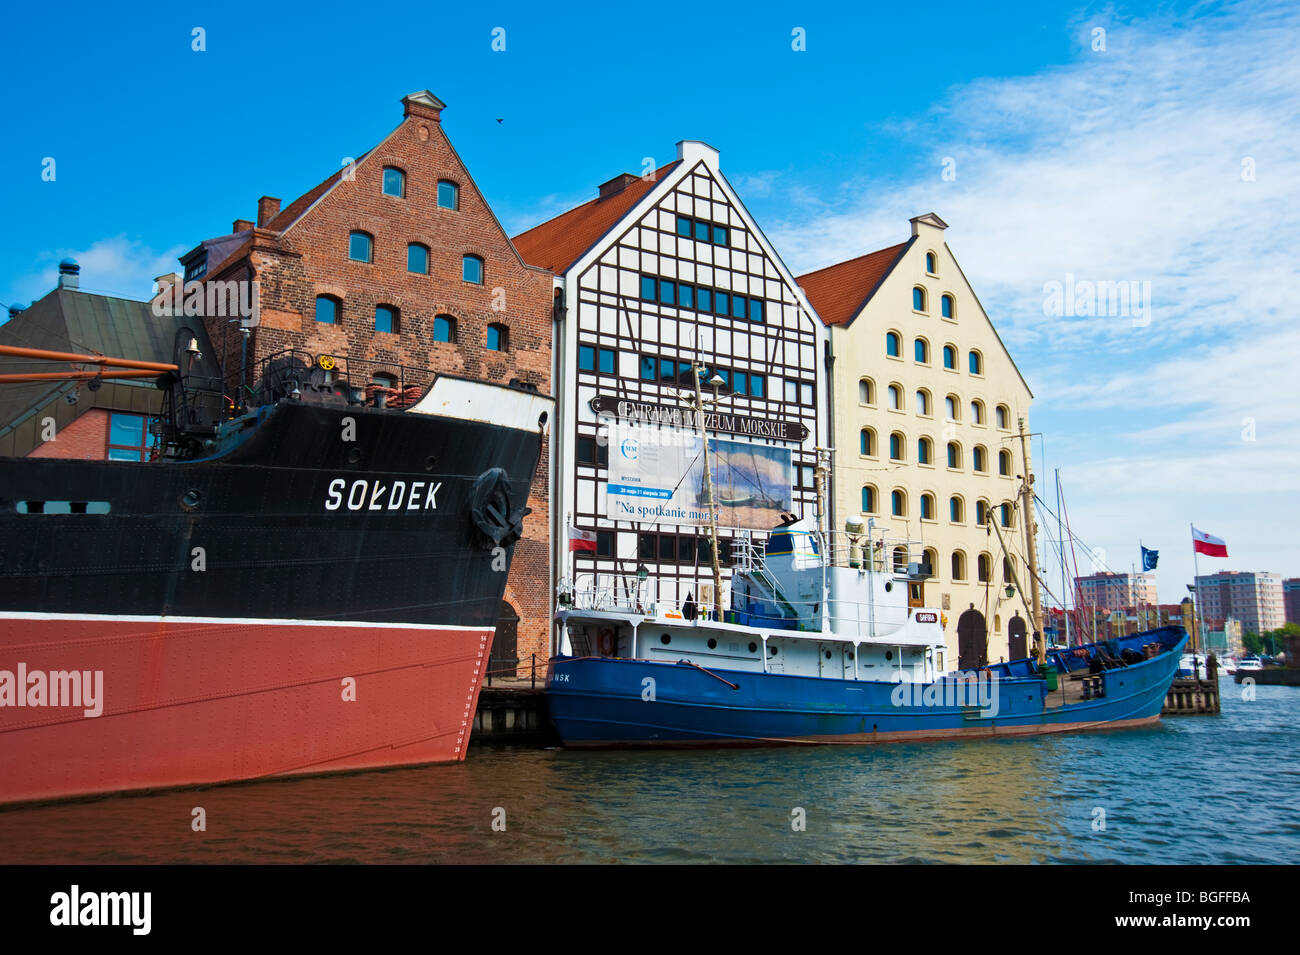 Dampfschiff Soldek vor Marine Museum, Altstadt von Danzig, Polen | Meeresmuseum Danzig Stockfoto